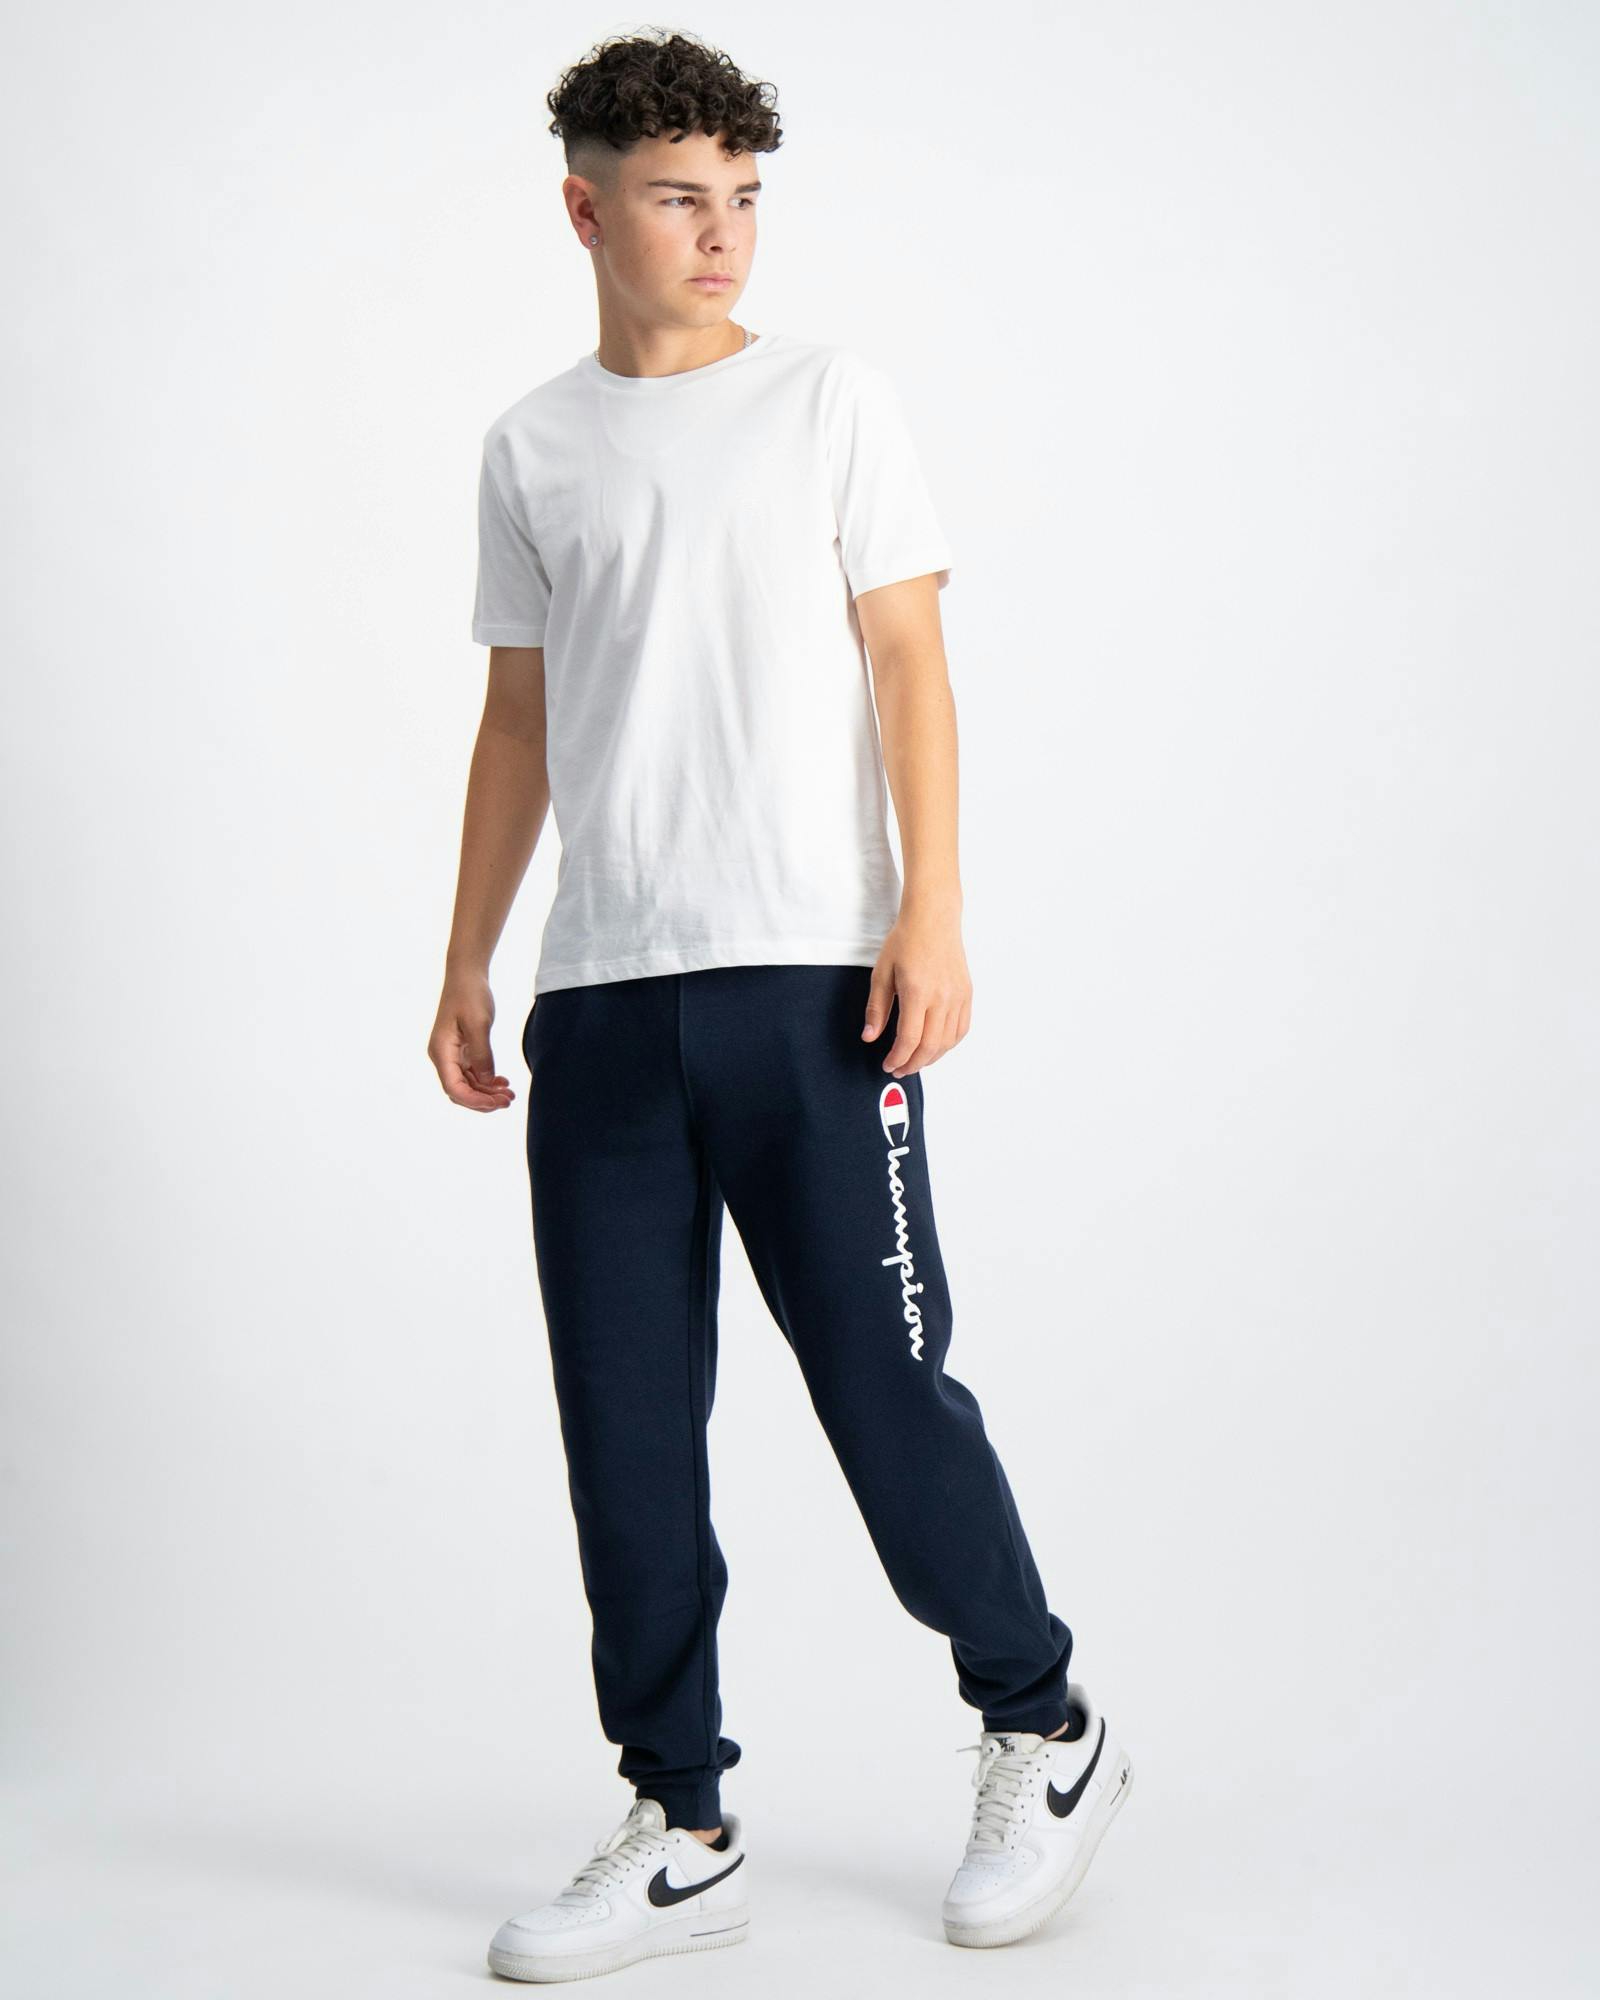 Blau Rib Cuff Pants für Jungen | Kids Brand Store